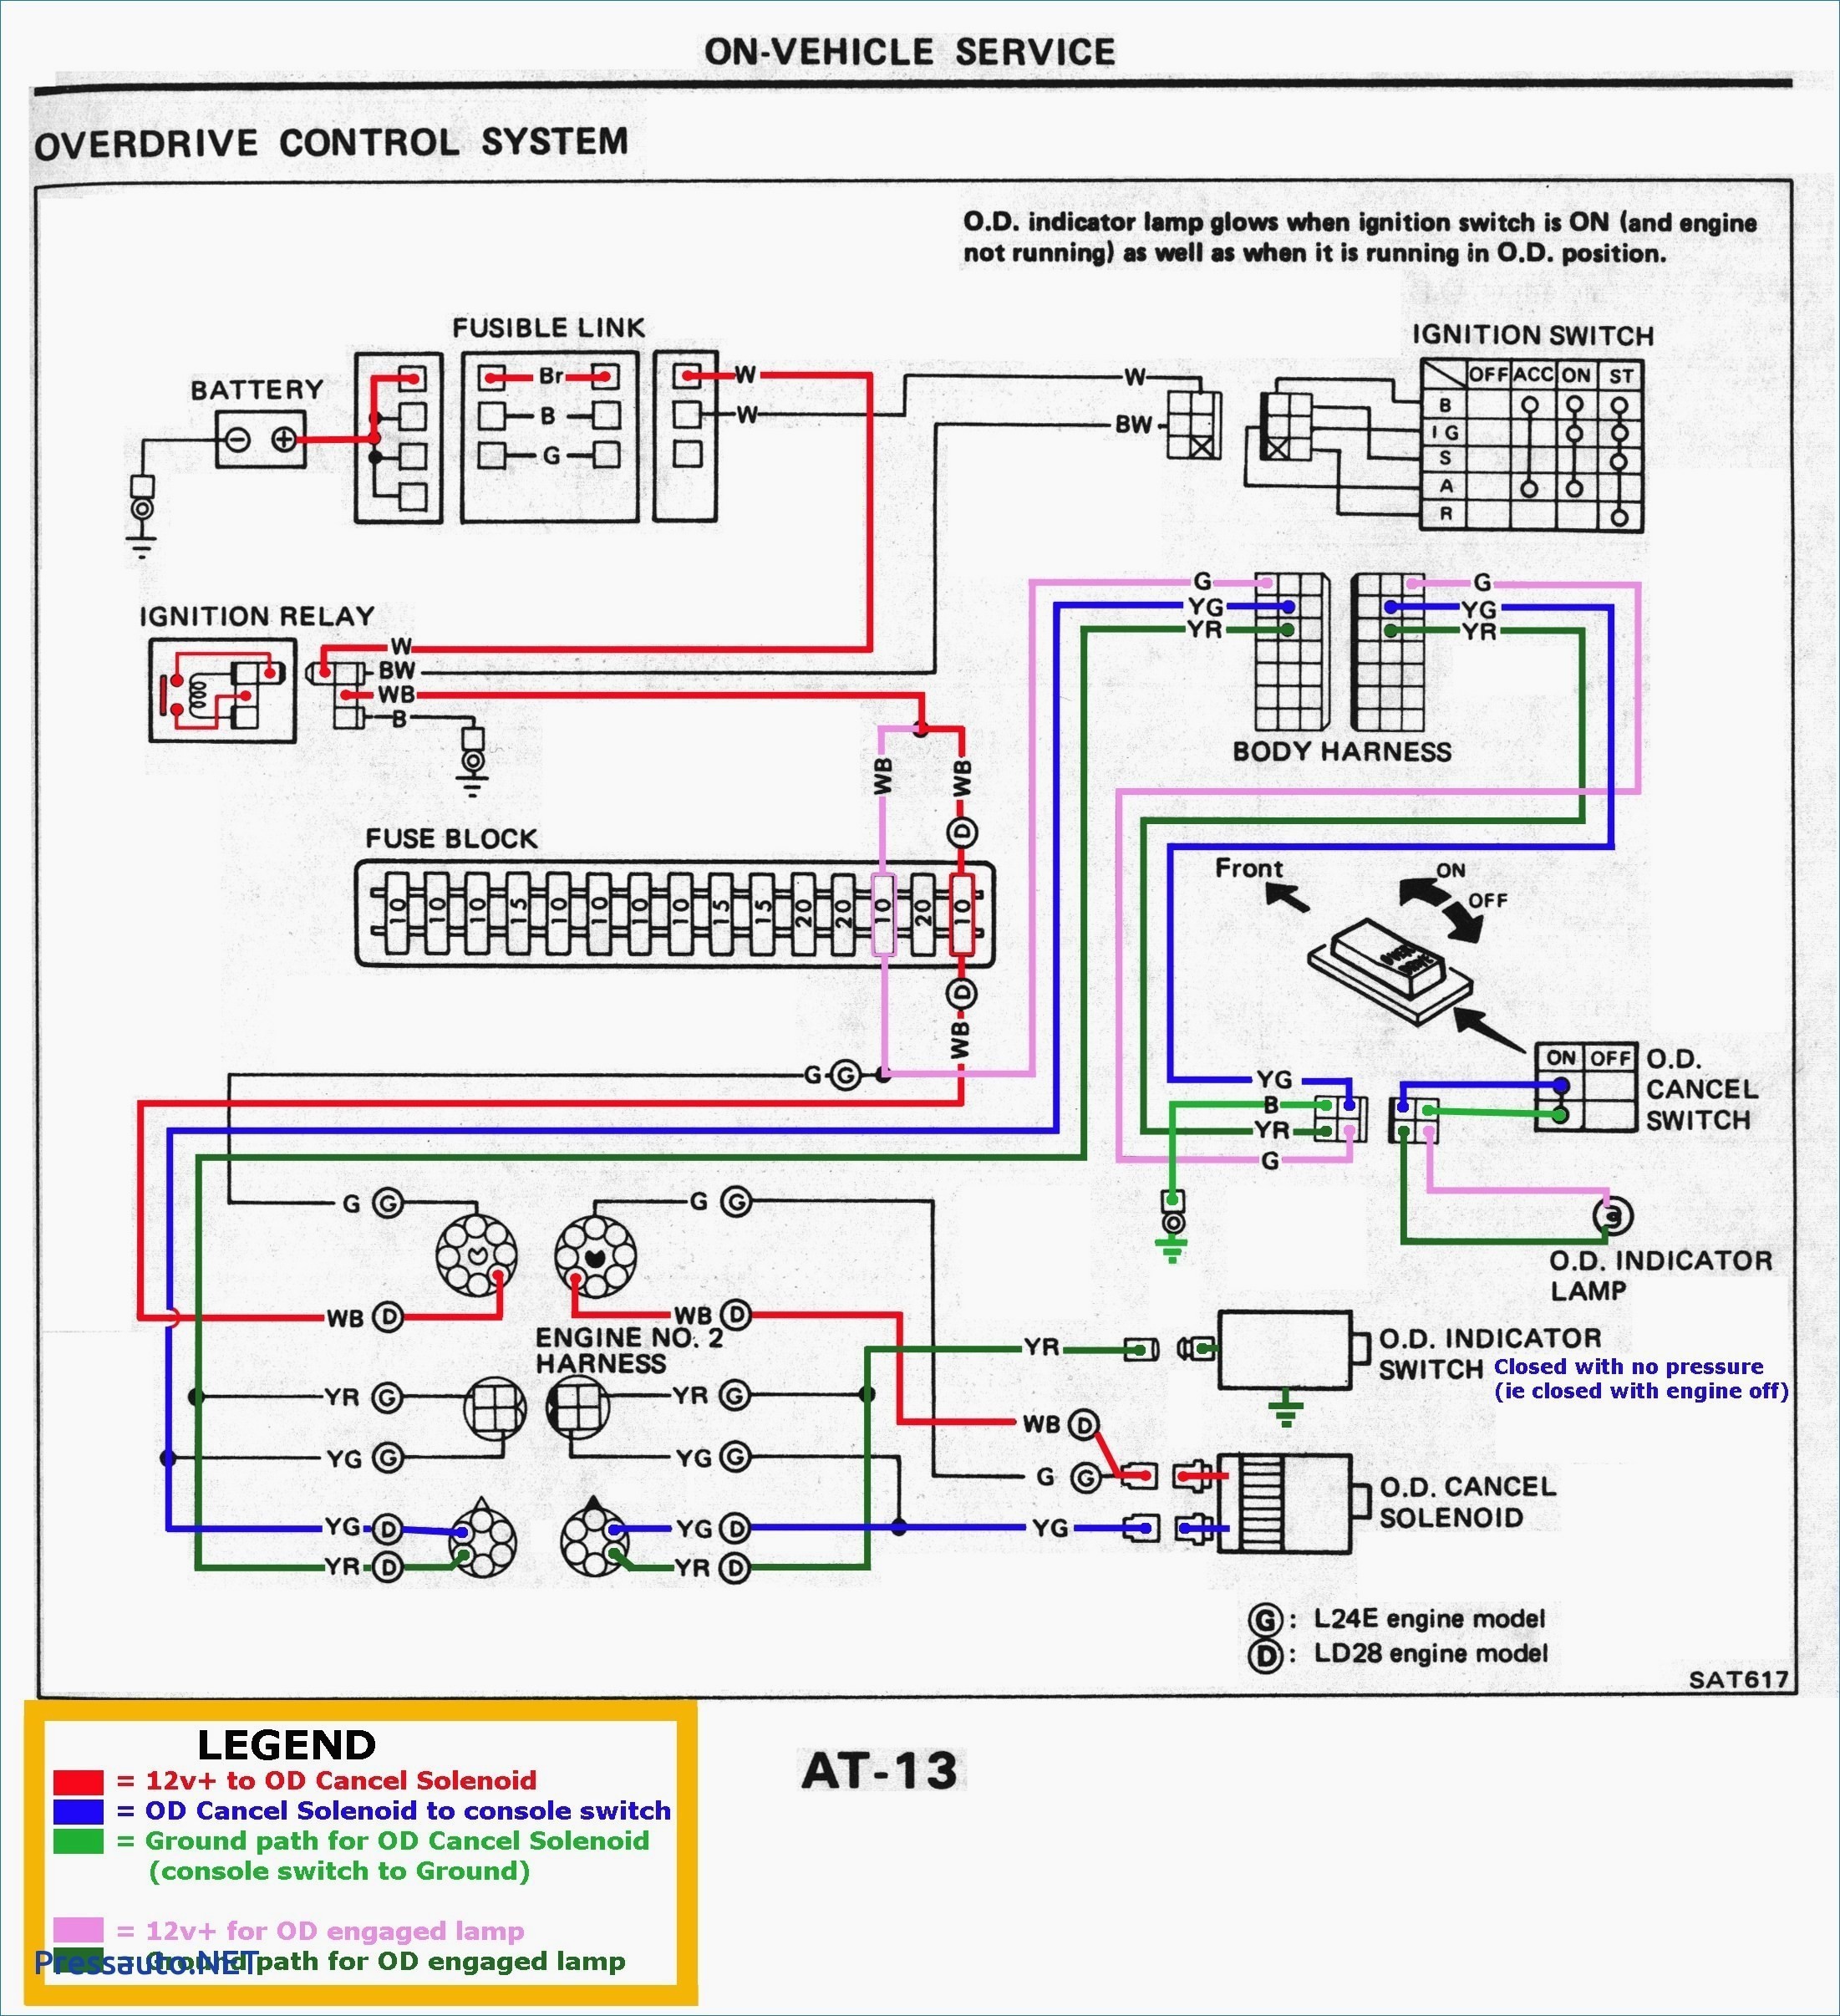 Car Engine Piston Diagram Simple Engine Diagram Experts Wiring Diagram • Of Car Engine Piston Diagram